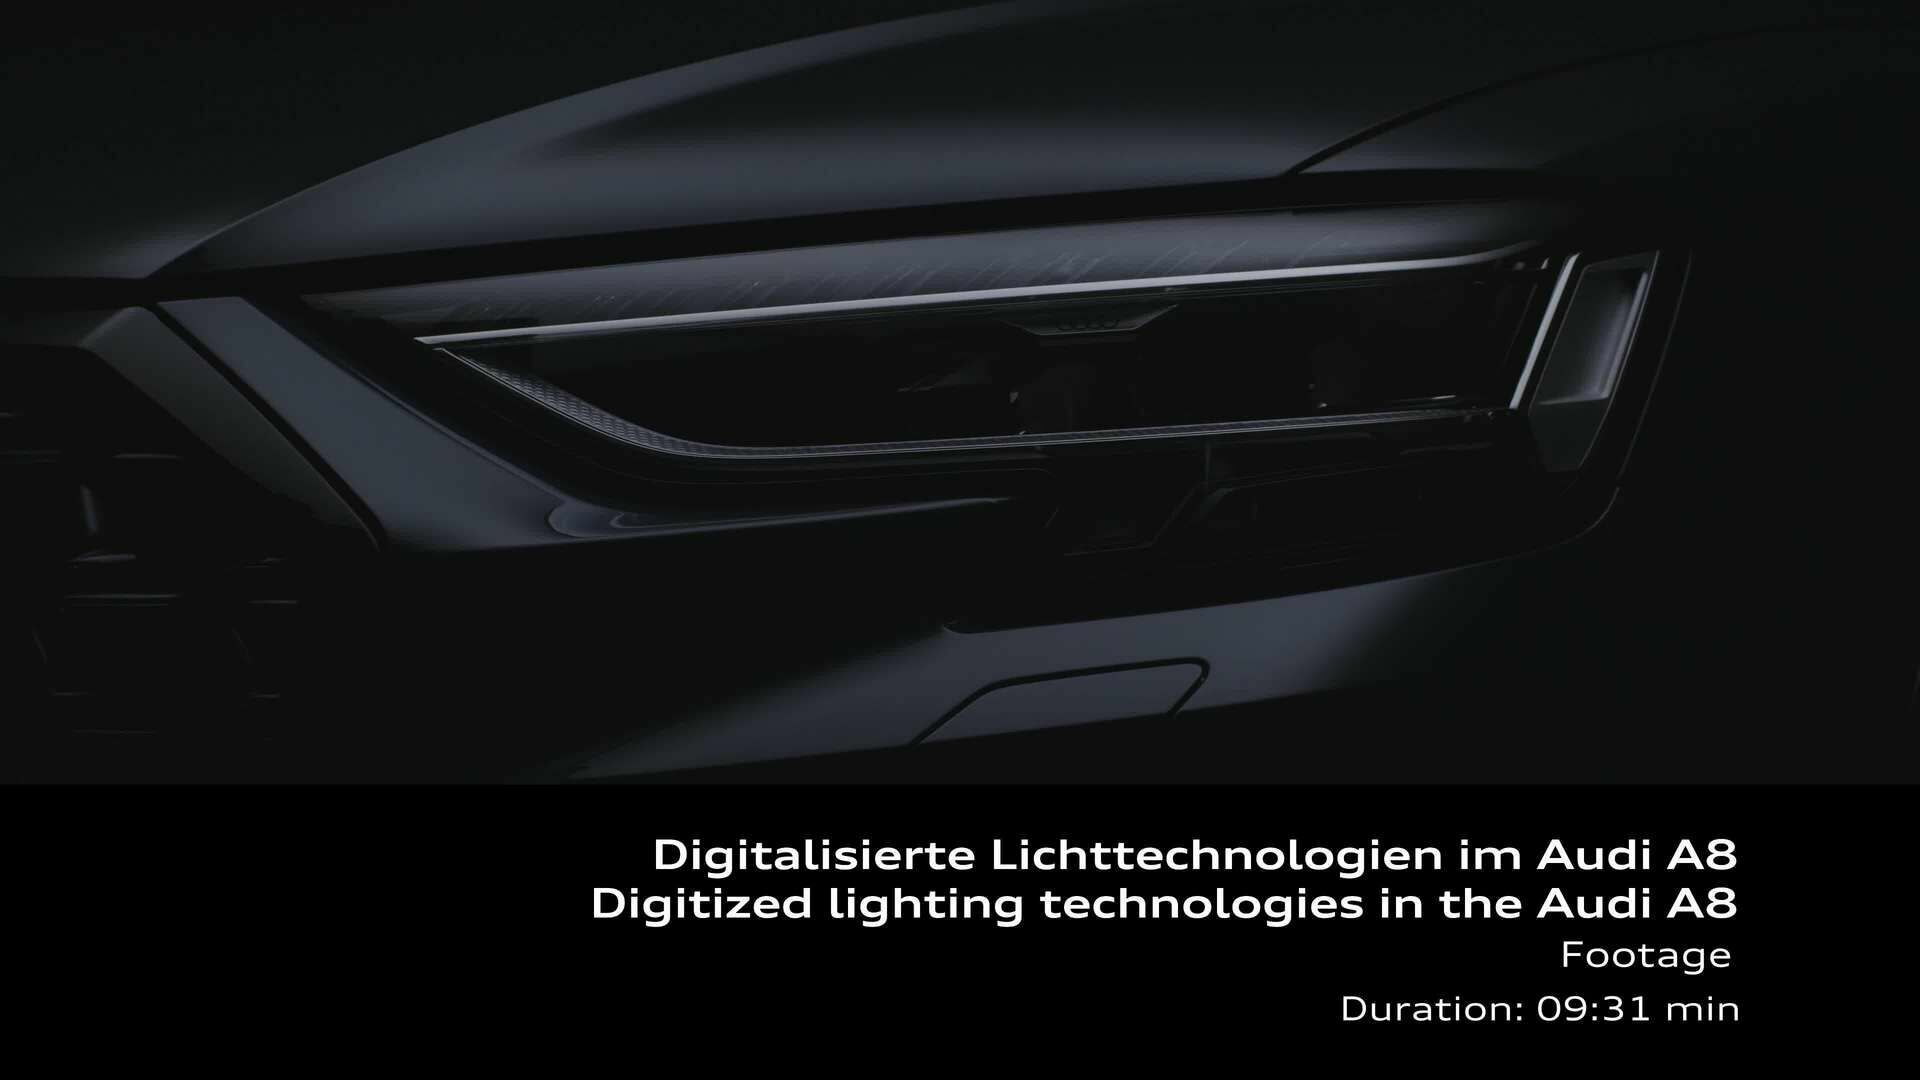 Footage: Digitalisierte Lichttechnologien im Audi A8